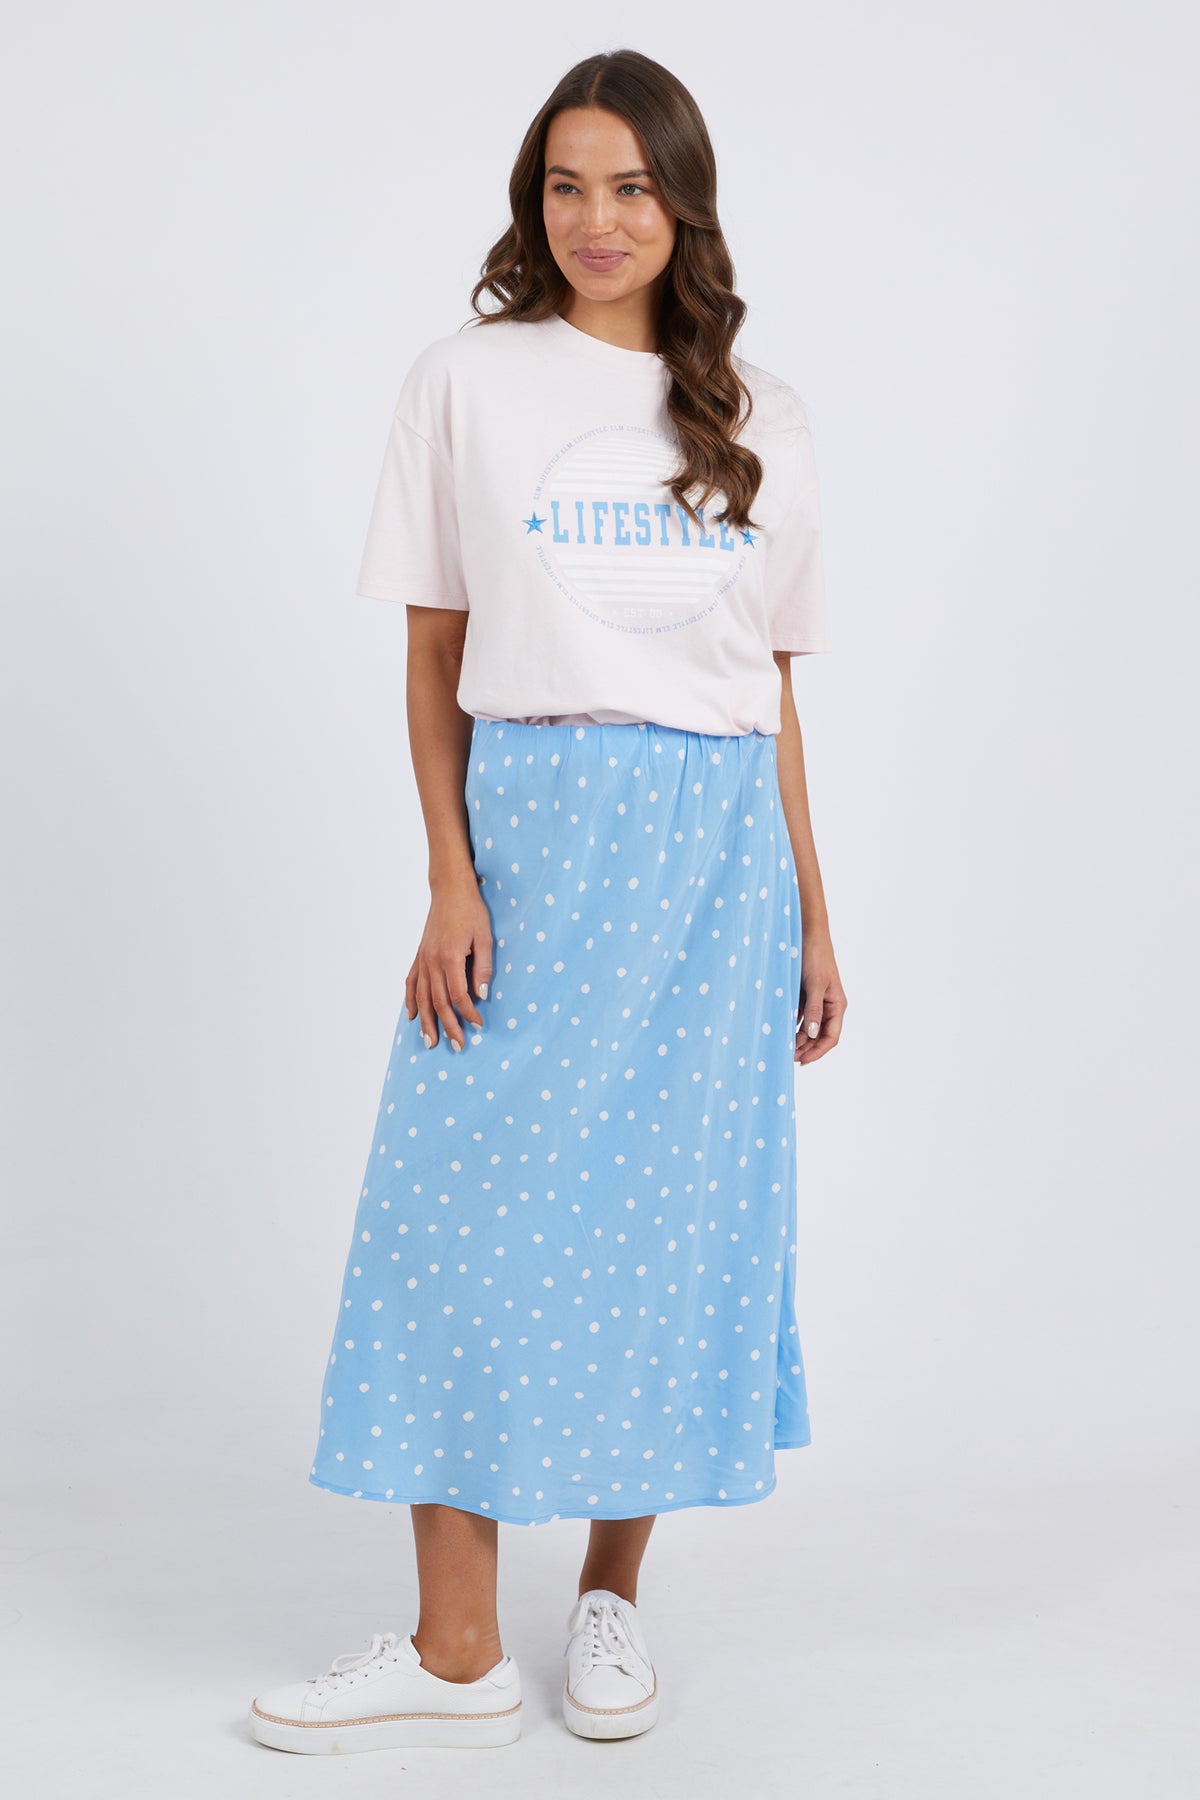 Romy Spot Skirt Azure Blue